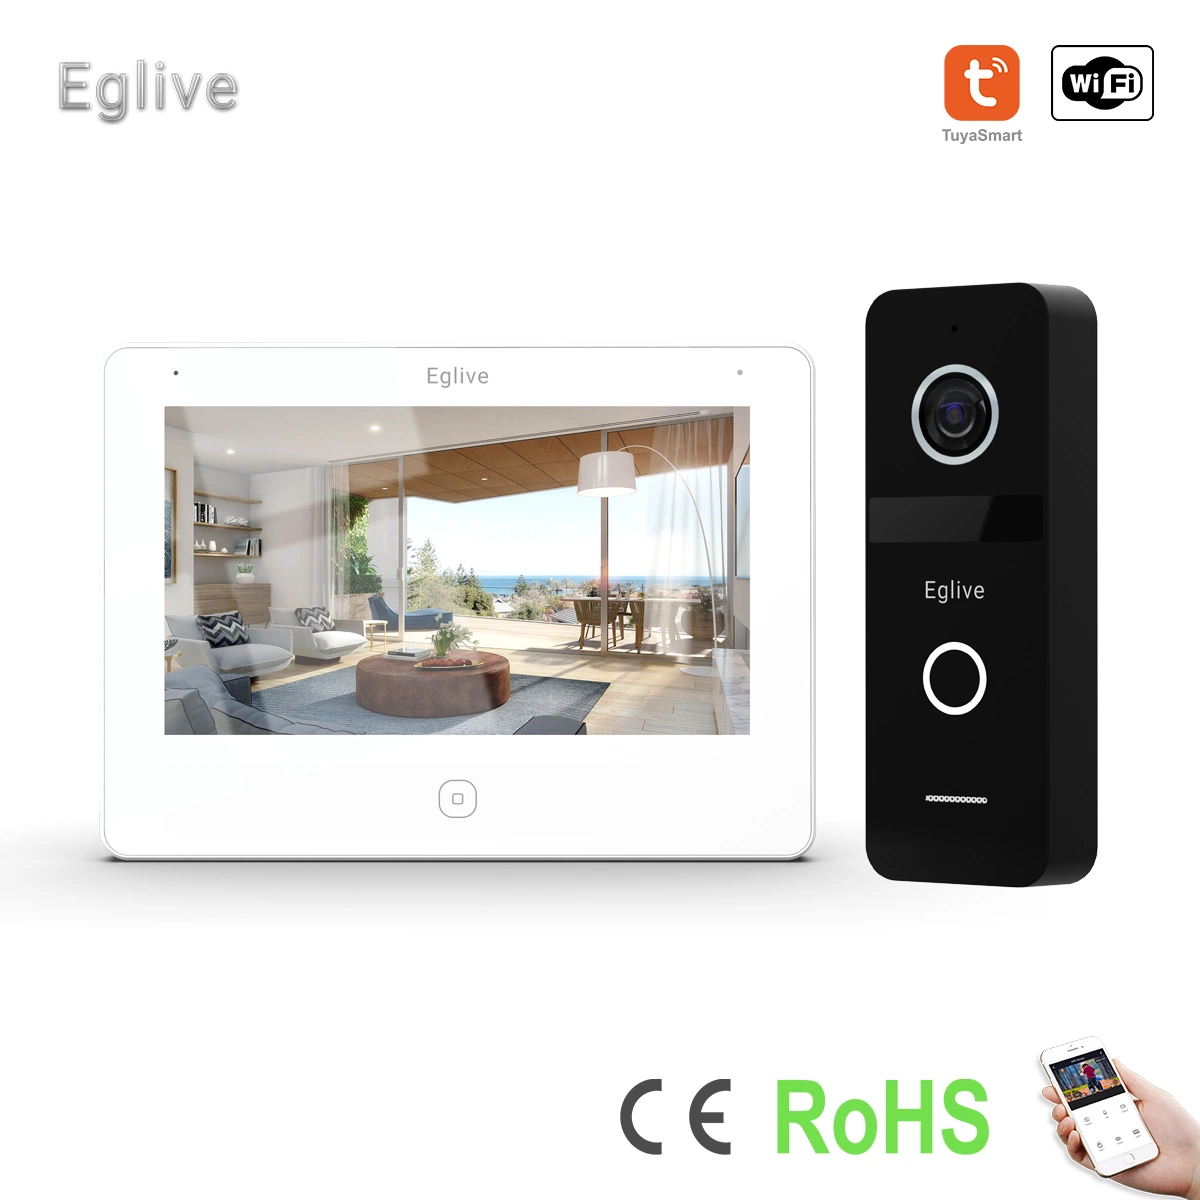 Eglive 7"UTP/IP WiFi Video Doorphone صوت ثنائي الاتجاه يتم التحكم فيه من خلال تطبيق الصوت